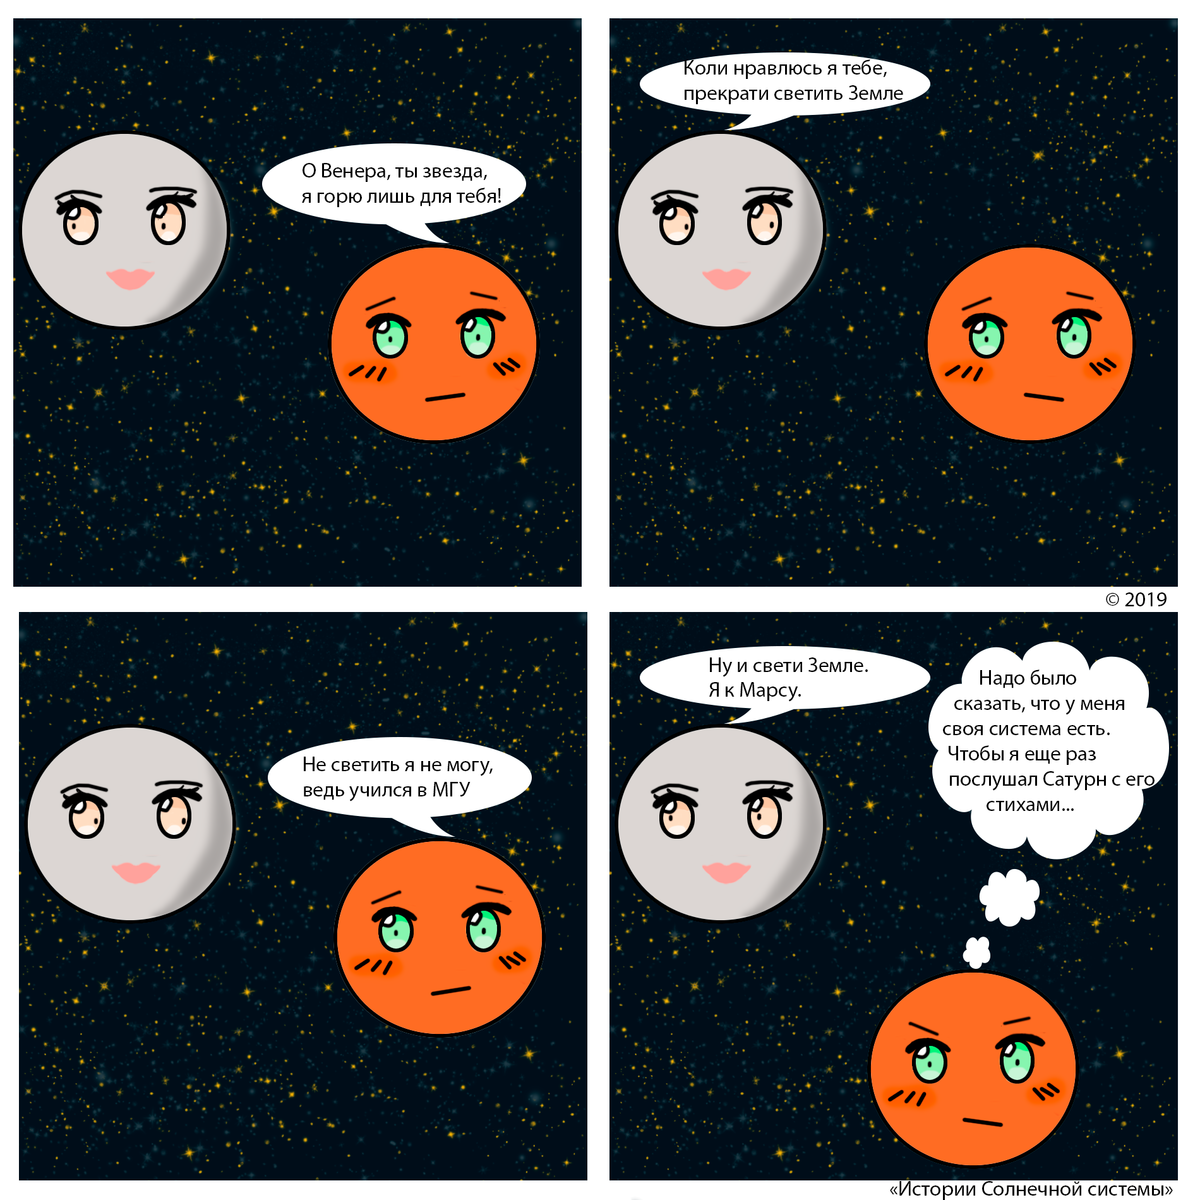 Фанфик меркурий. Комиксы про планеты солнечной системы. Приколы про планеты. Смешные комиксы про планеты солнечной системы. Мемы про планеты.